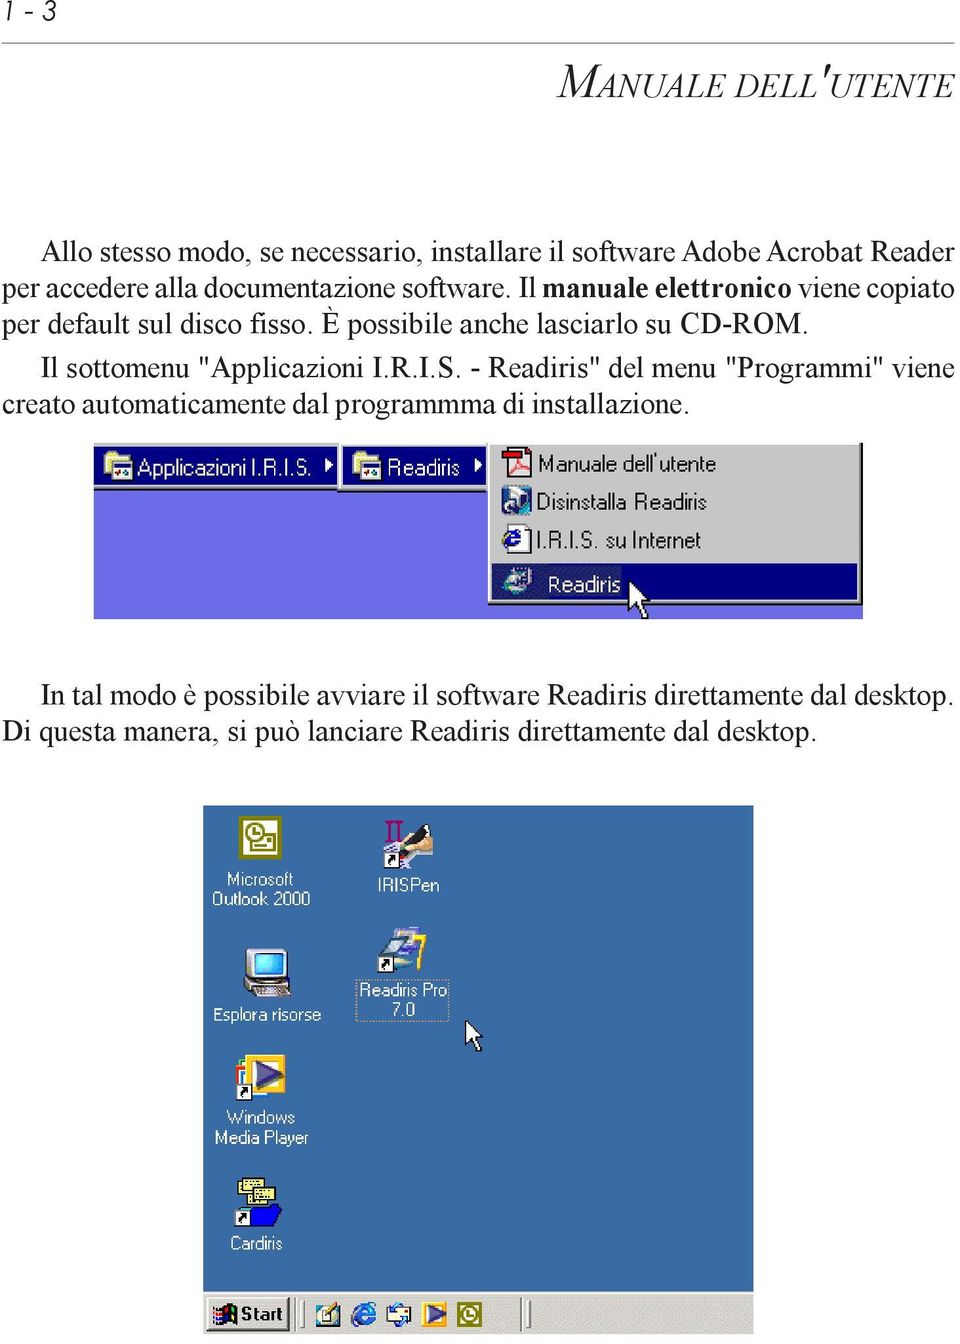 Il sottomenu "Applicazioni I.R.I.S. - Readiris" del menu "Programmi" viene creato automaticamente dal programmma di installazione.